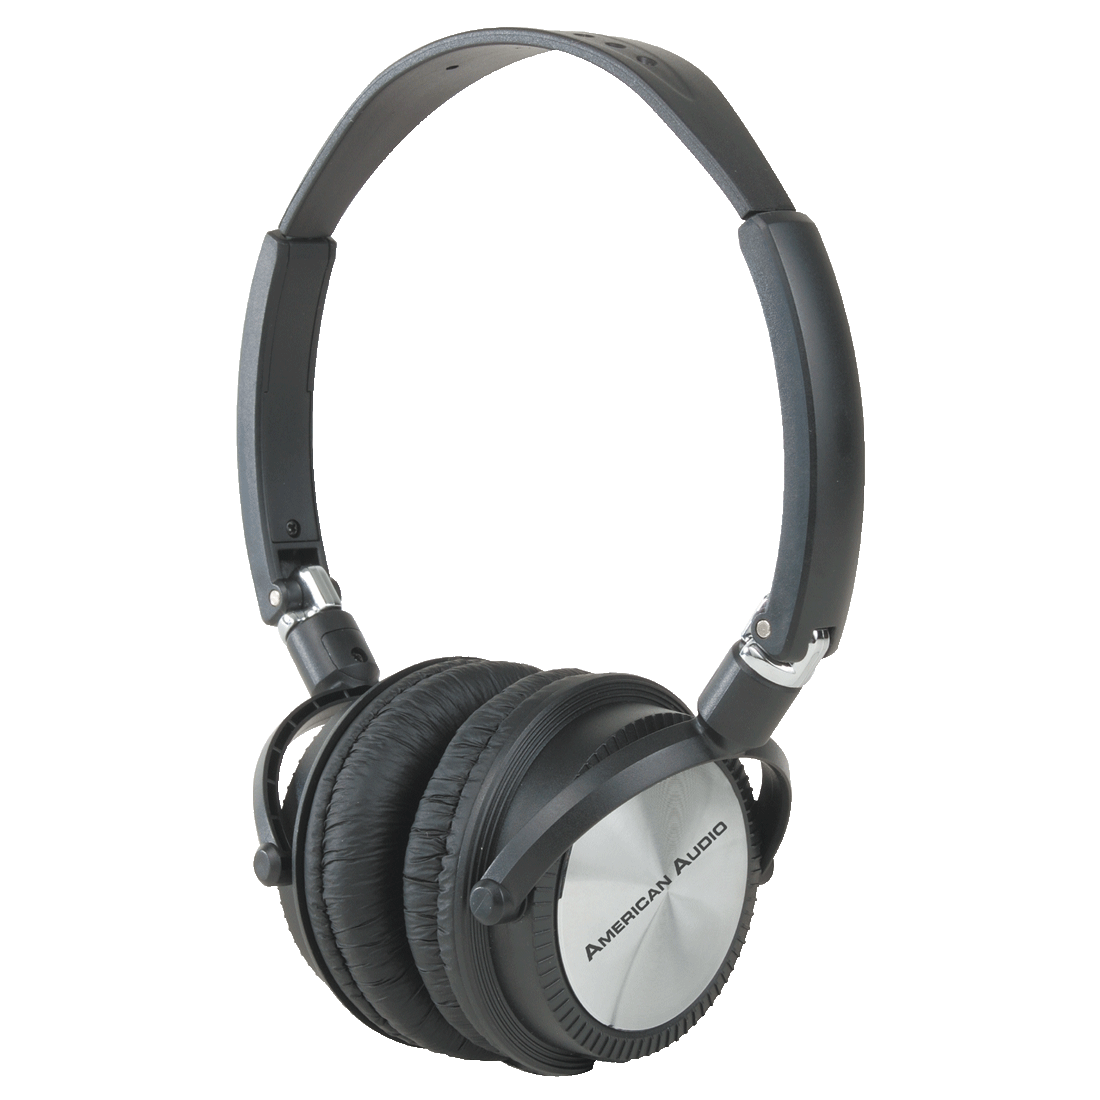 HP200 headphones